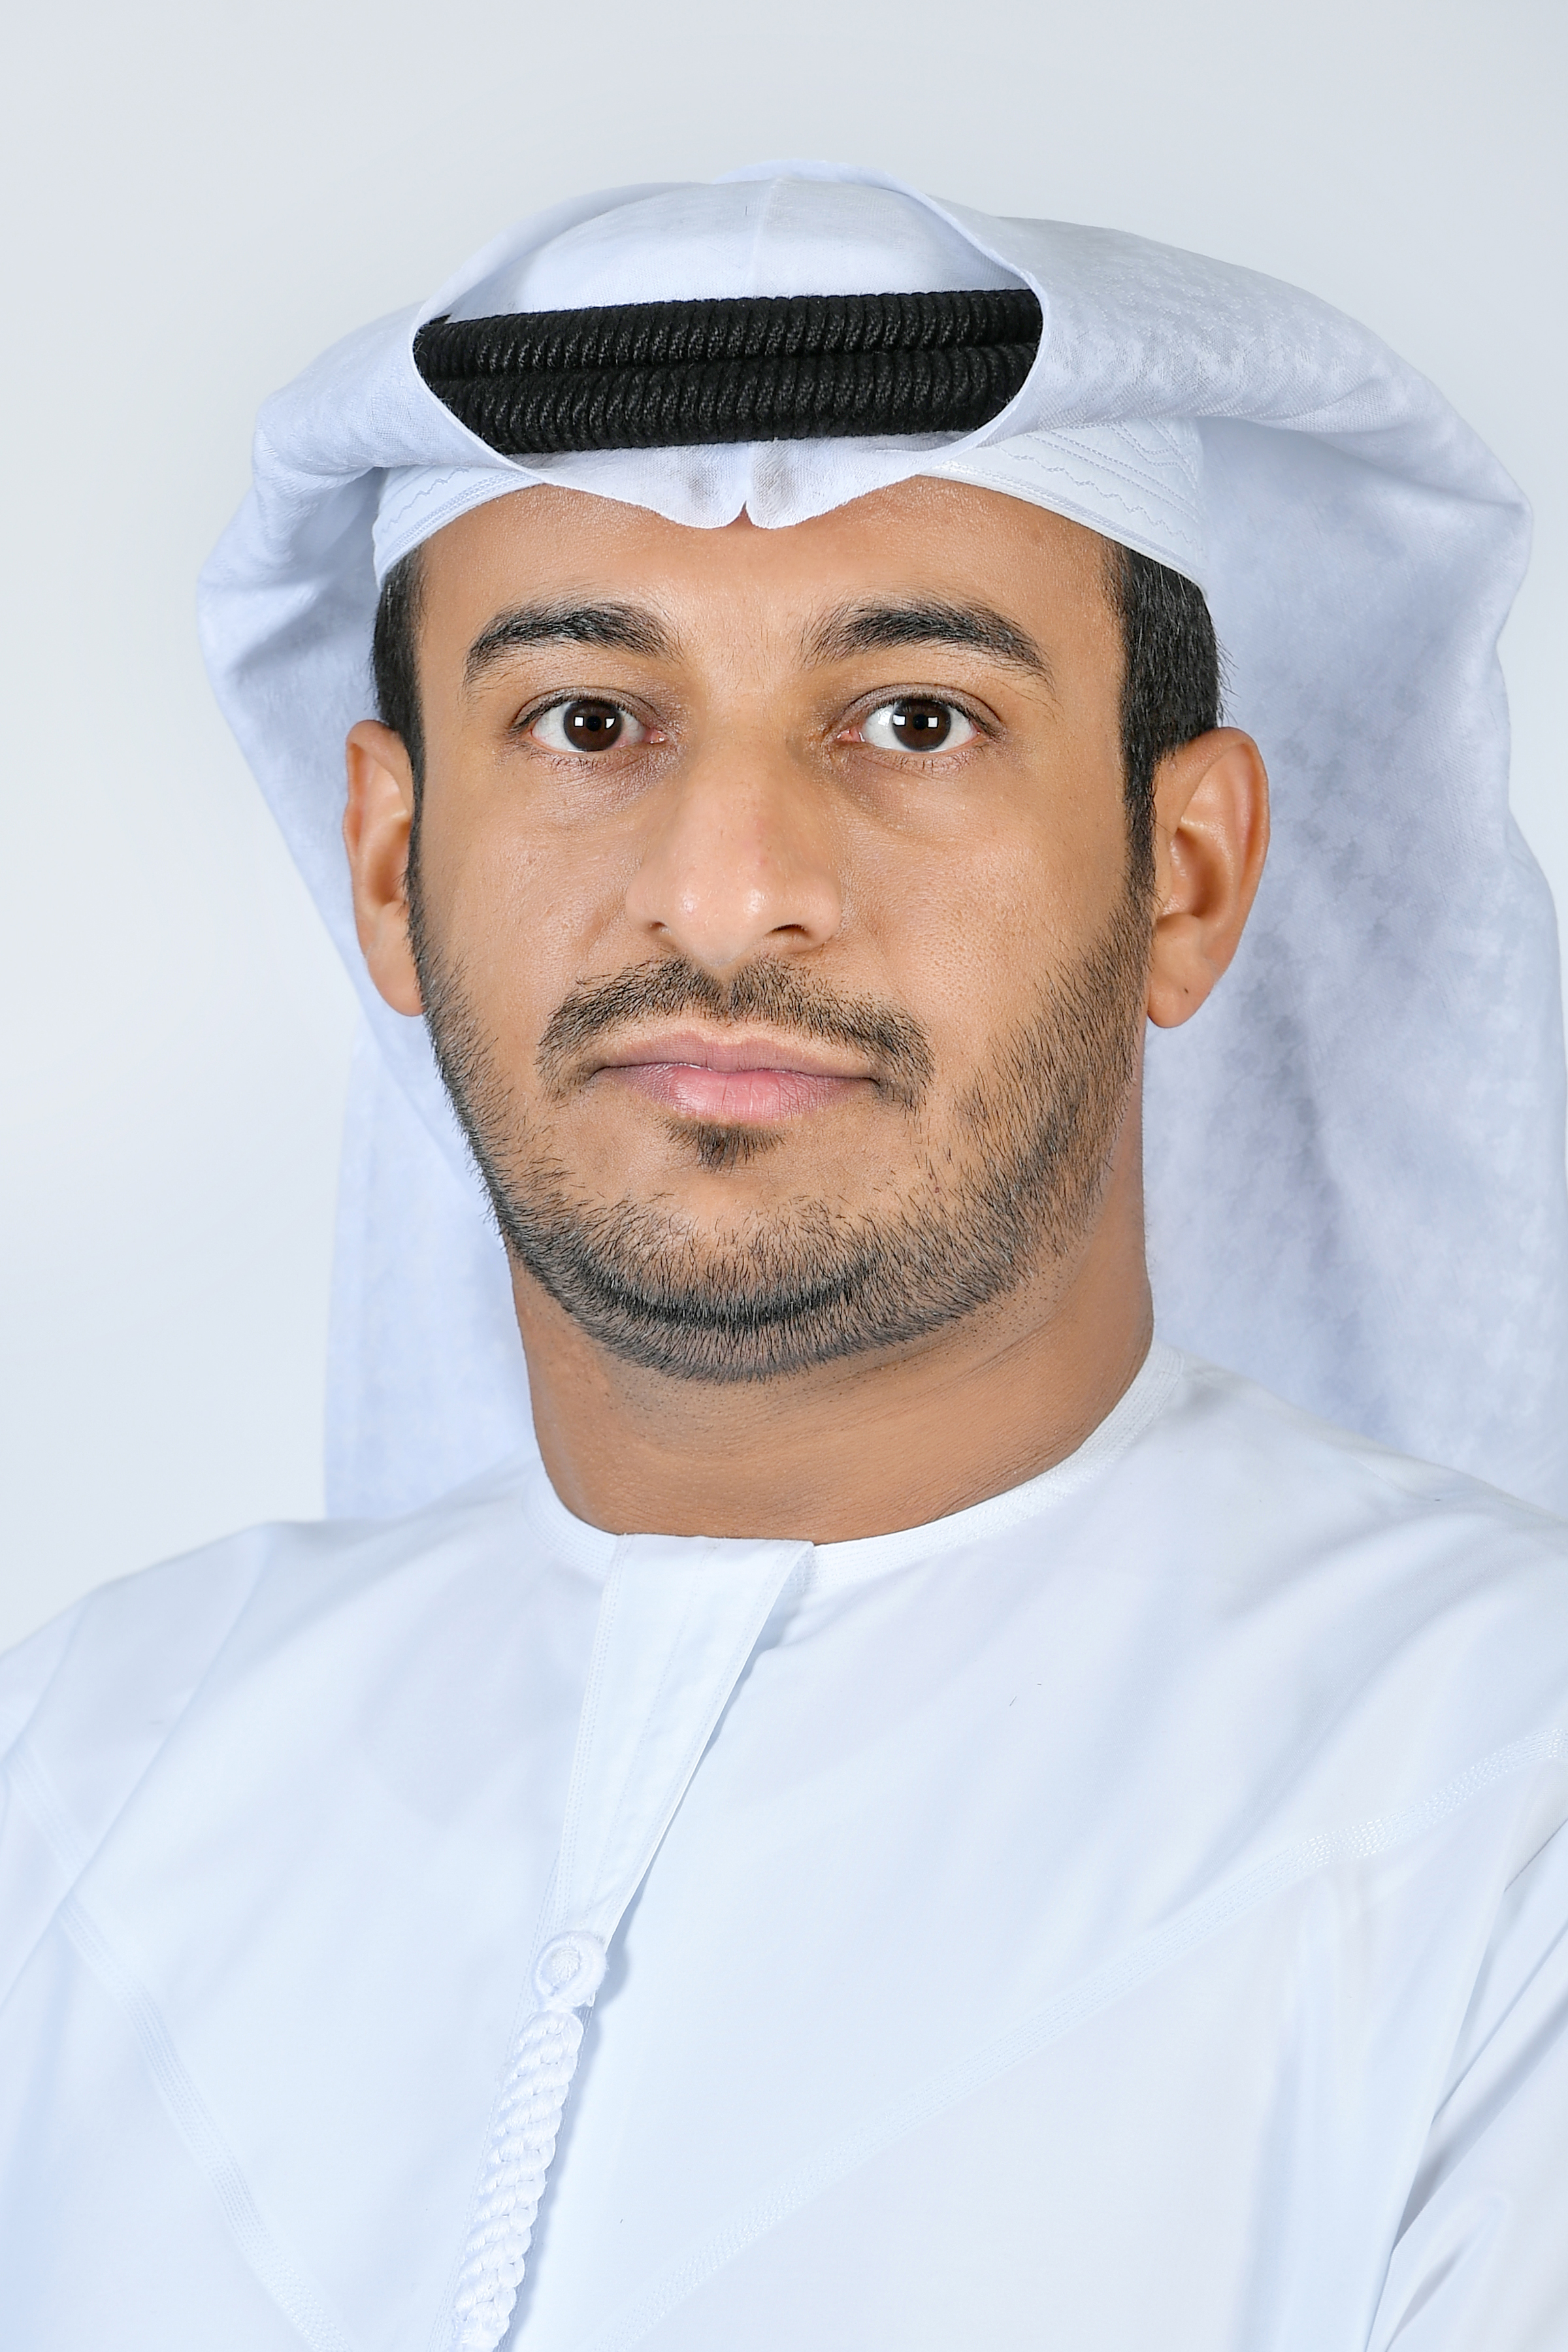 Dr. Saeed Alameri